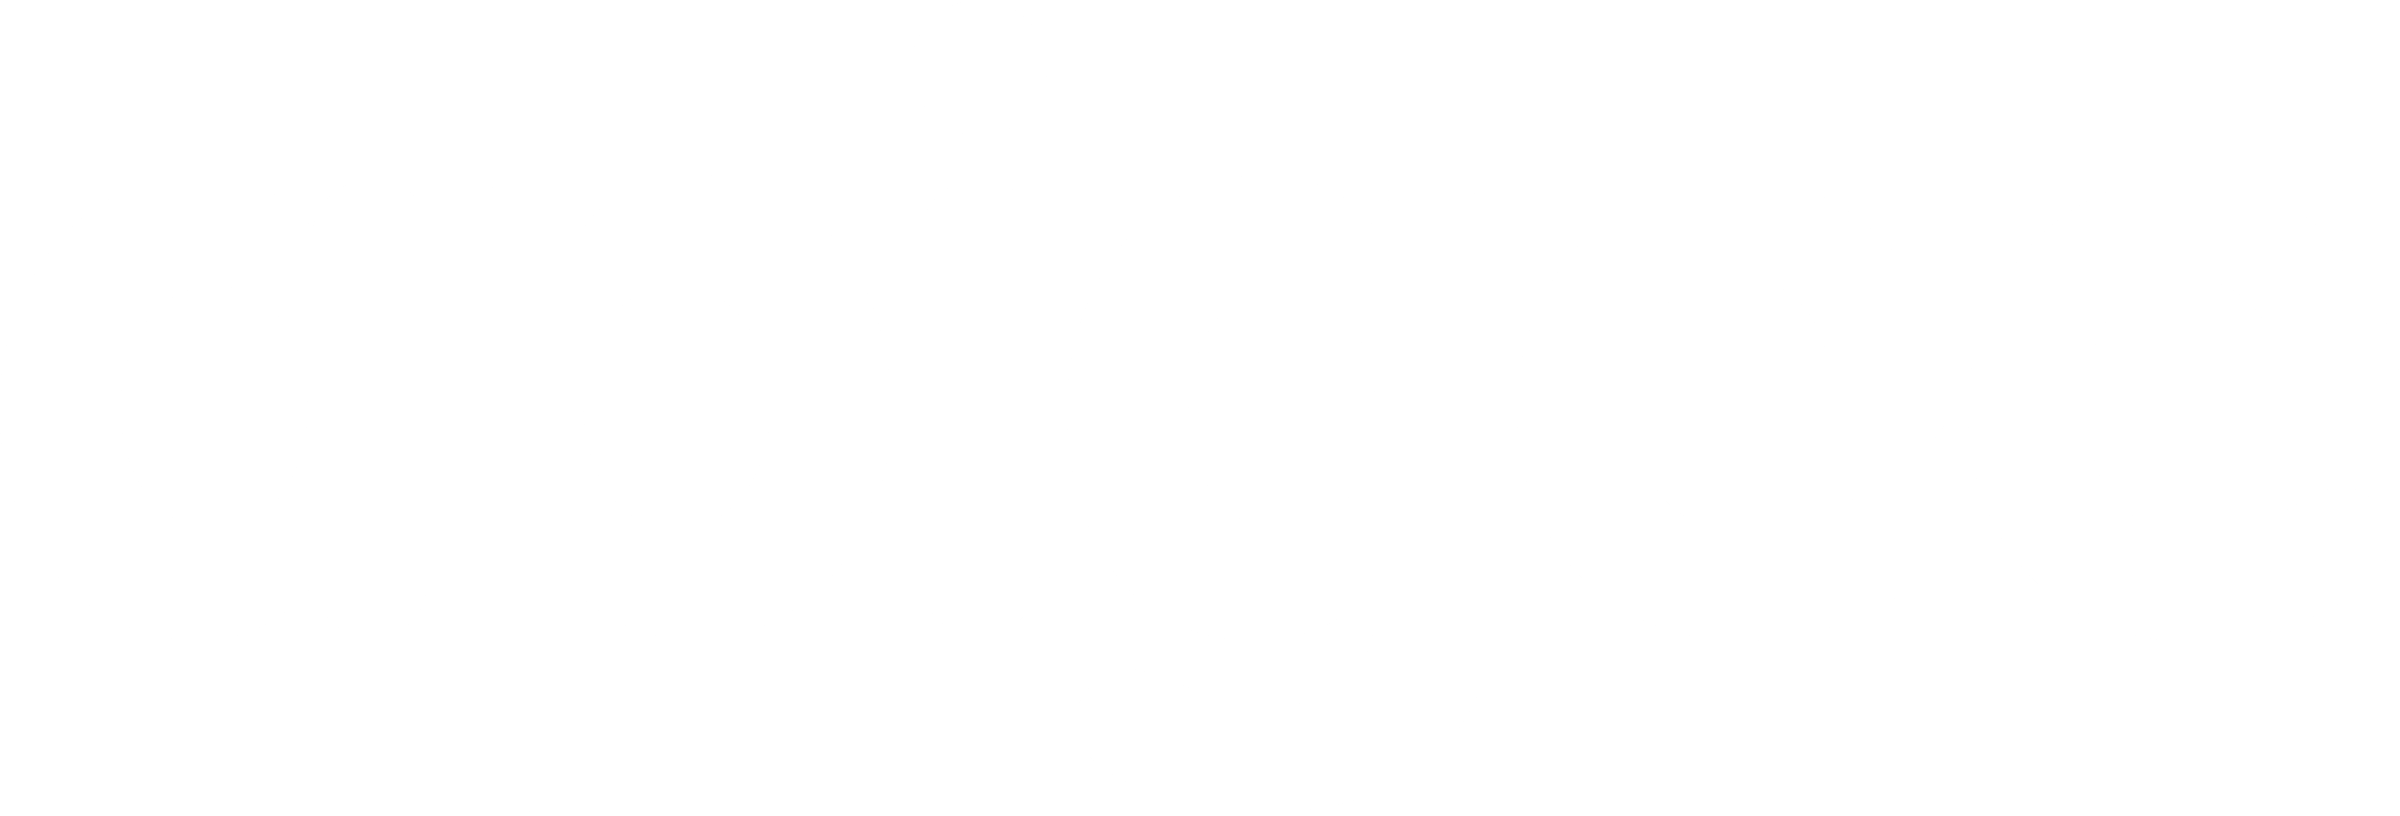 Apigee Logo - Apigee Logo PNG Transparent & SVG Vector